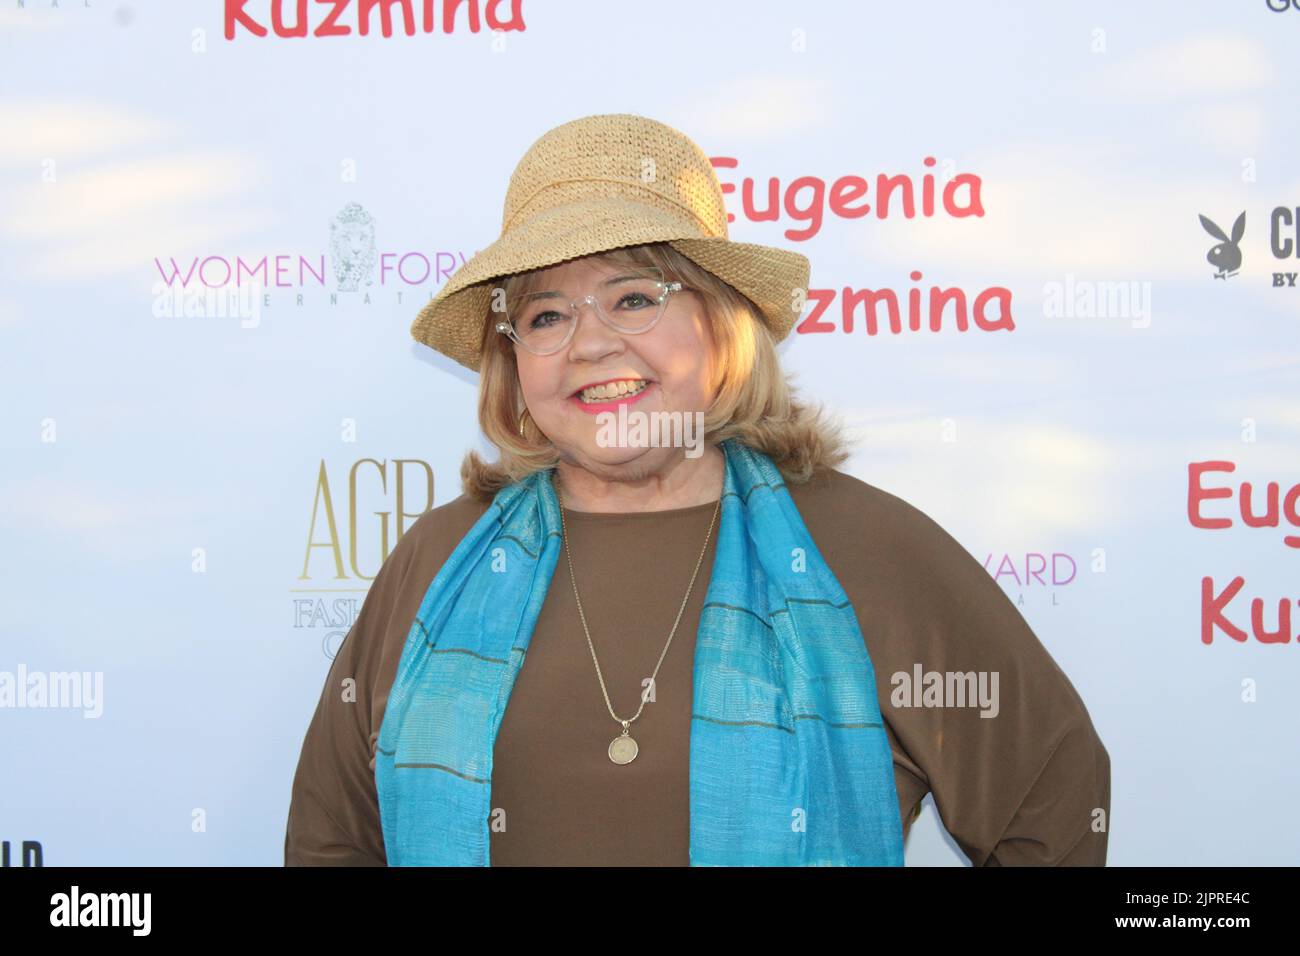 18 août 2022 - LOS ANGELES, CA : assiste aux arrivées de tapis rouge pour le lancement de l'Eugenia Kuzmina Playboy à l'hôtel Godfrey sur 18 août 2022 à Los Angeles, Californie. Photo: BSO photo/l'accès photo Banque D'Images